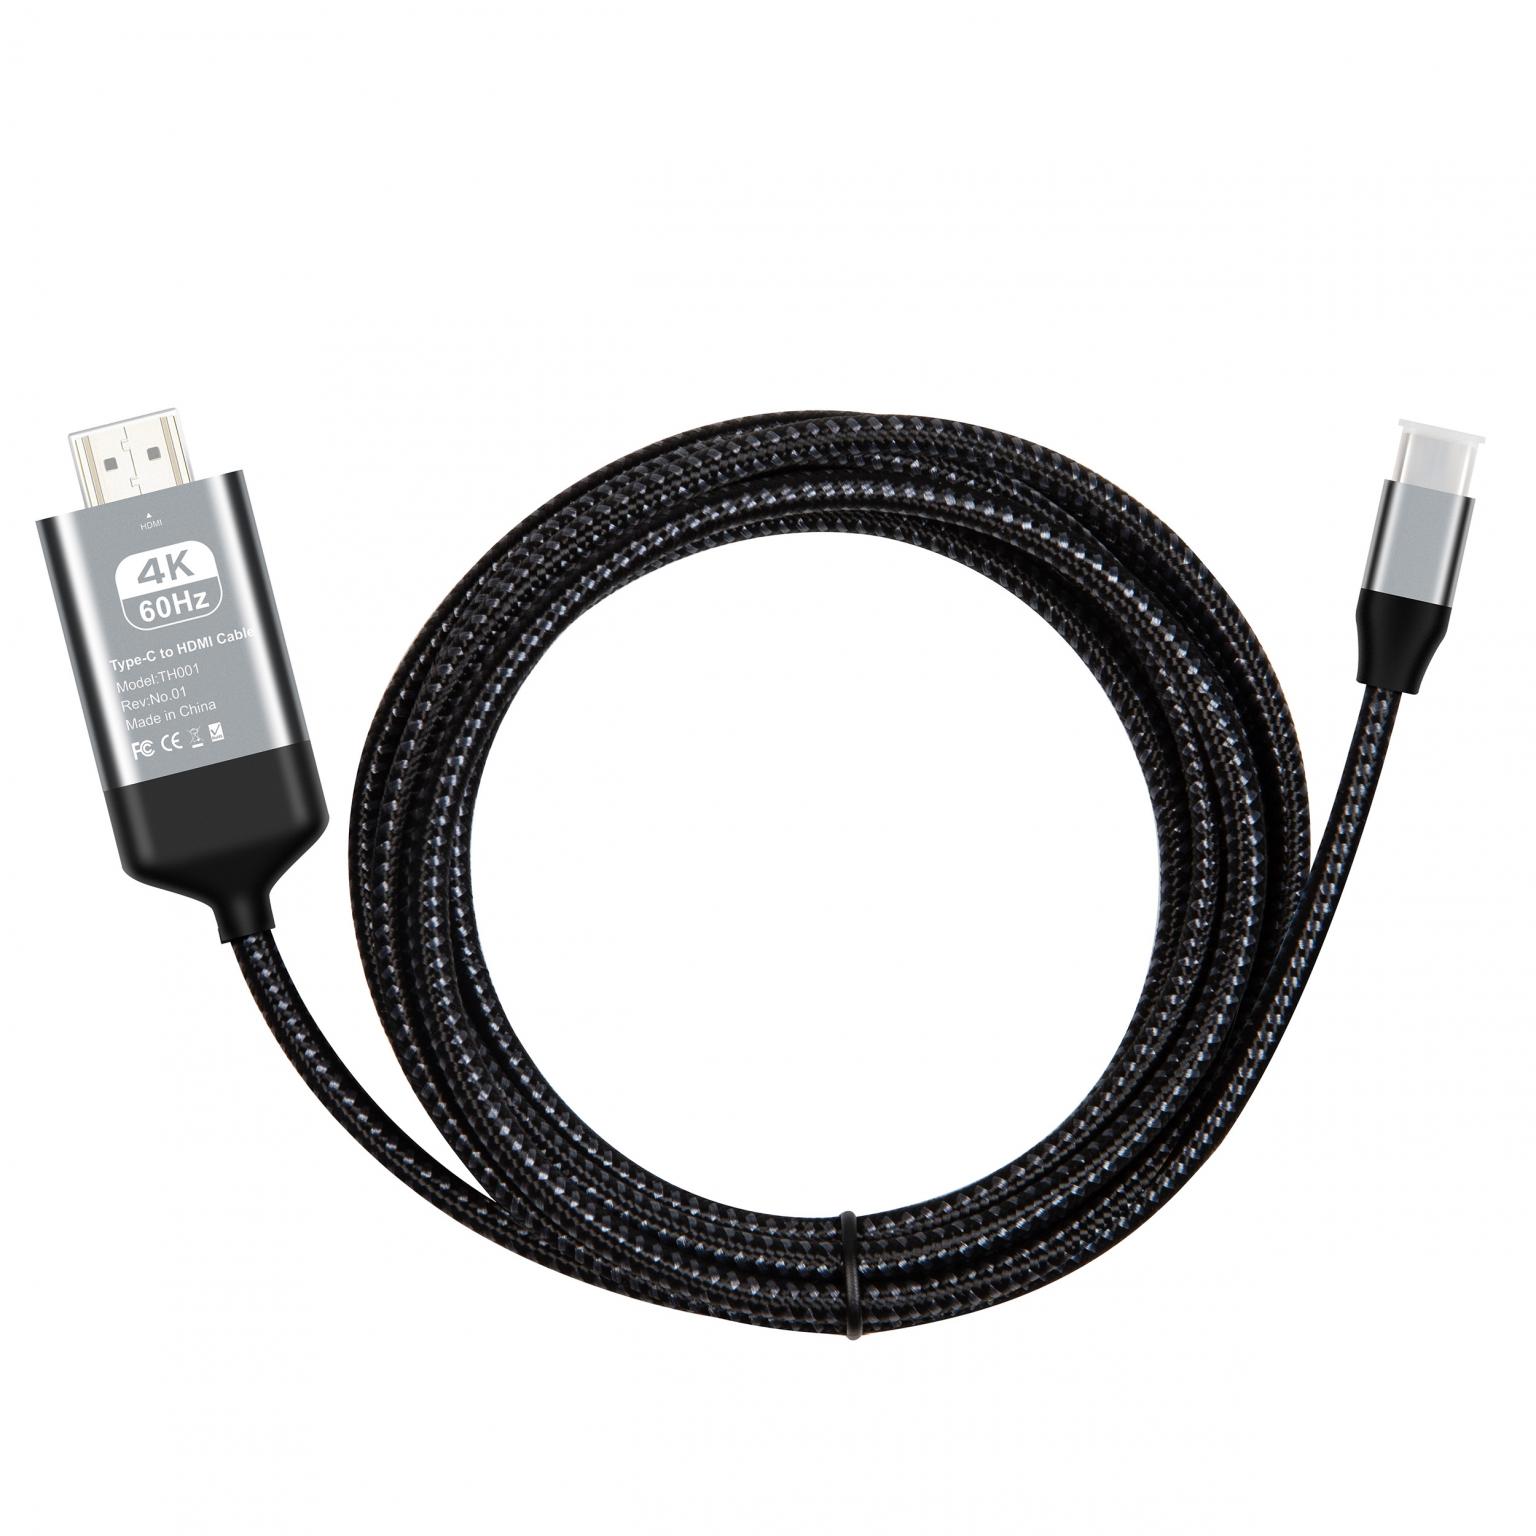 Perseus Luiheid terug USB C naar HDMI kabel - Aansluiting 1: USB C male Aansluiting 2: HDMI male  Max. resolutie: 4K@60Hz